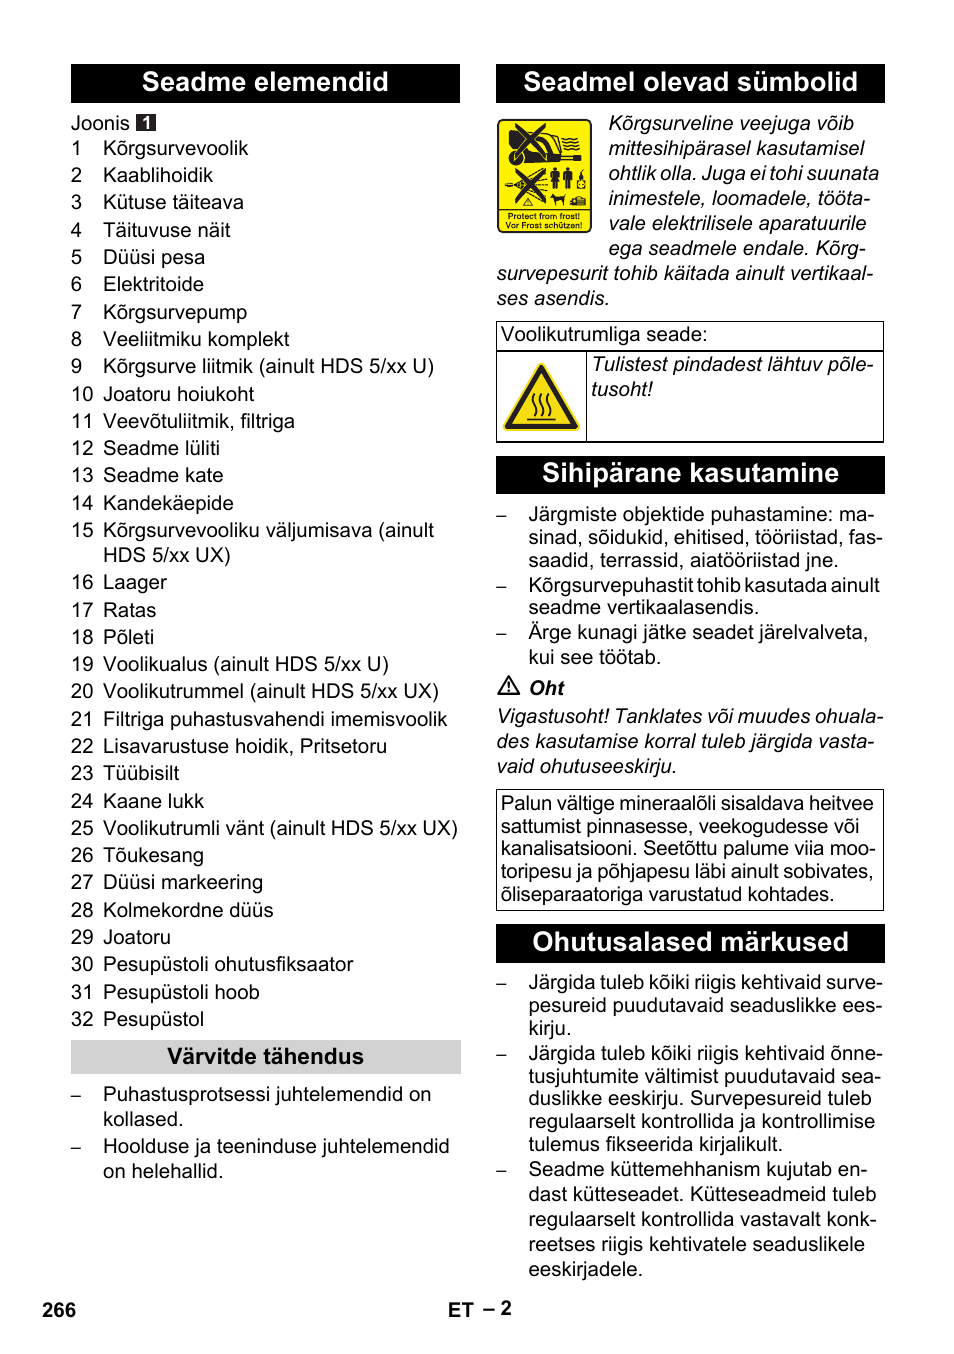 Seadme elemendid, Seadmel olevad sümbolid, Sihipärane kasutamine | Karcher  HDS 5-11 UX User Manual | Page 266 / 312